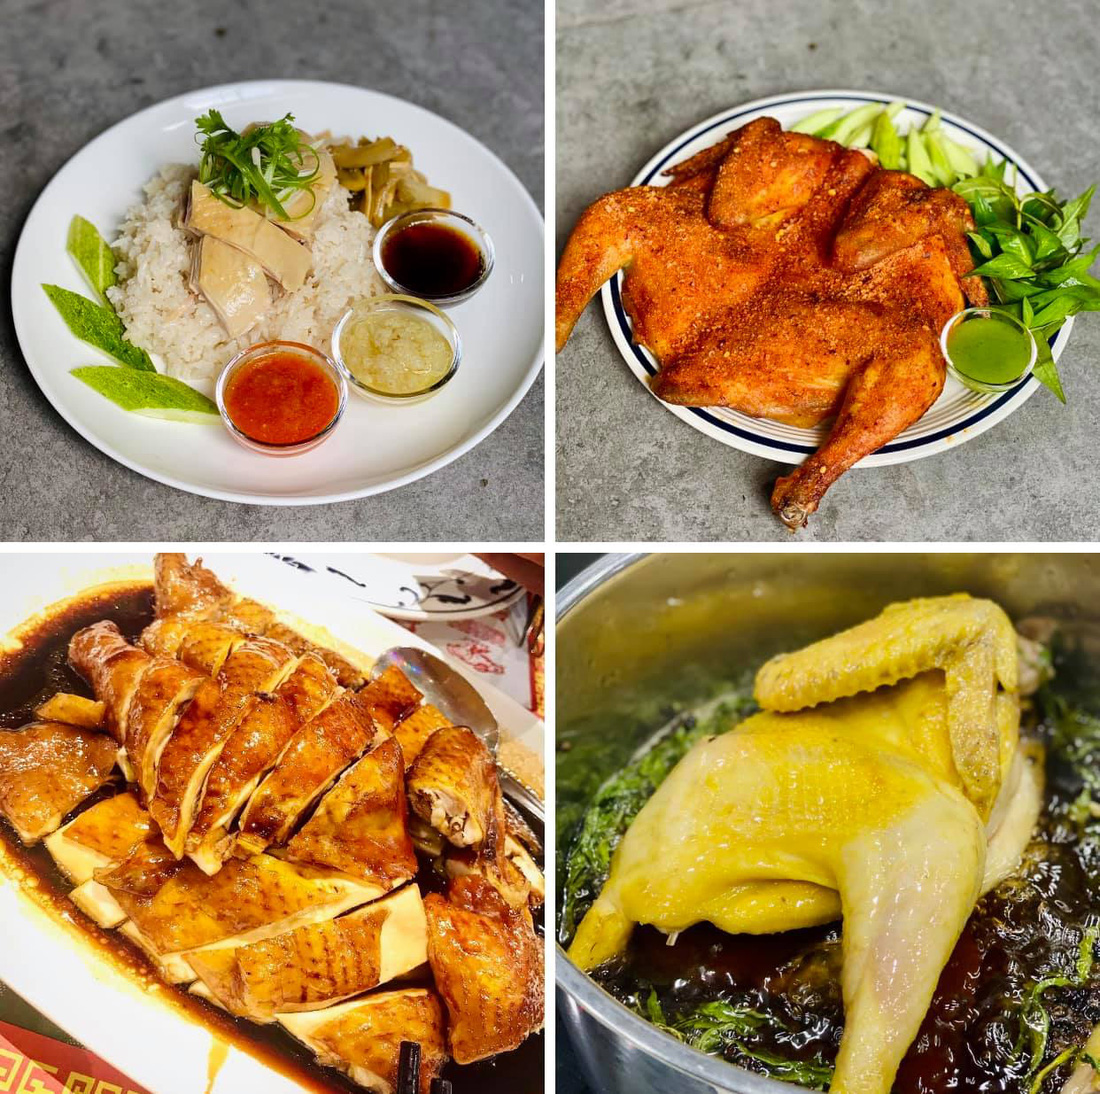 Đầu bếp Võ Quốc rủ người Sài Gòn nấu nướng để ăn ngon mà vui ngày giãn cách - Ảnh 1.